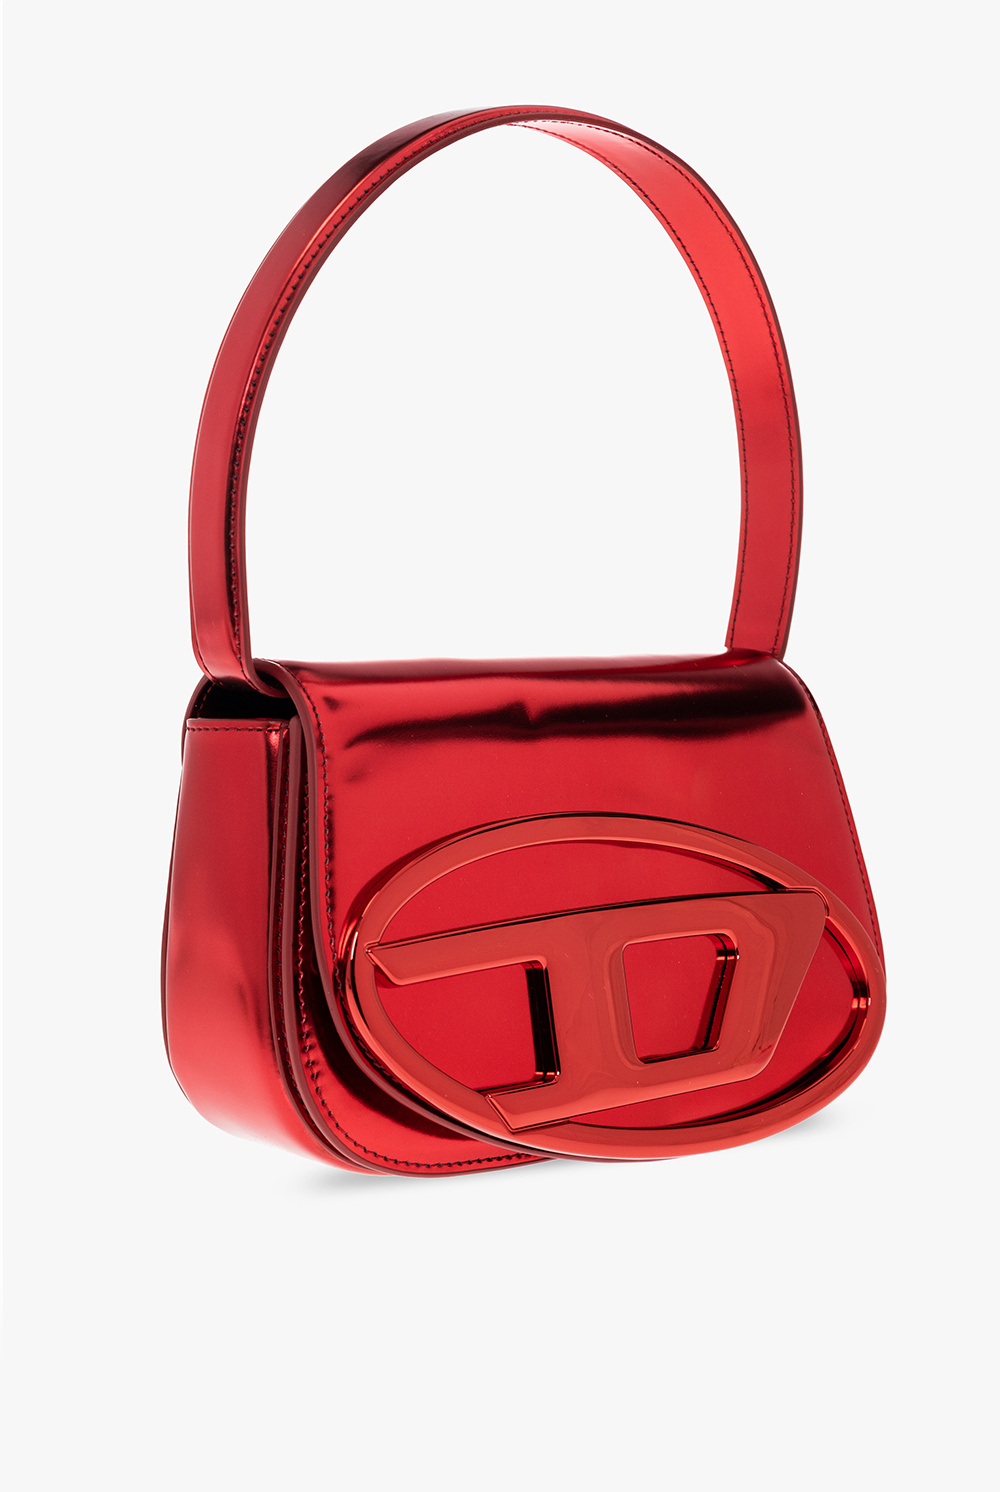 Snap Clips for Louis Vuitton Bag Shoulder Strap 3/4''